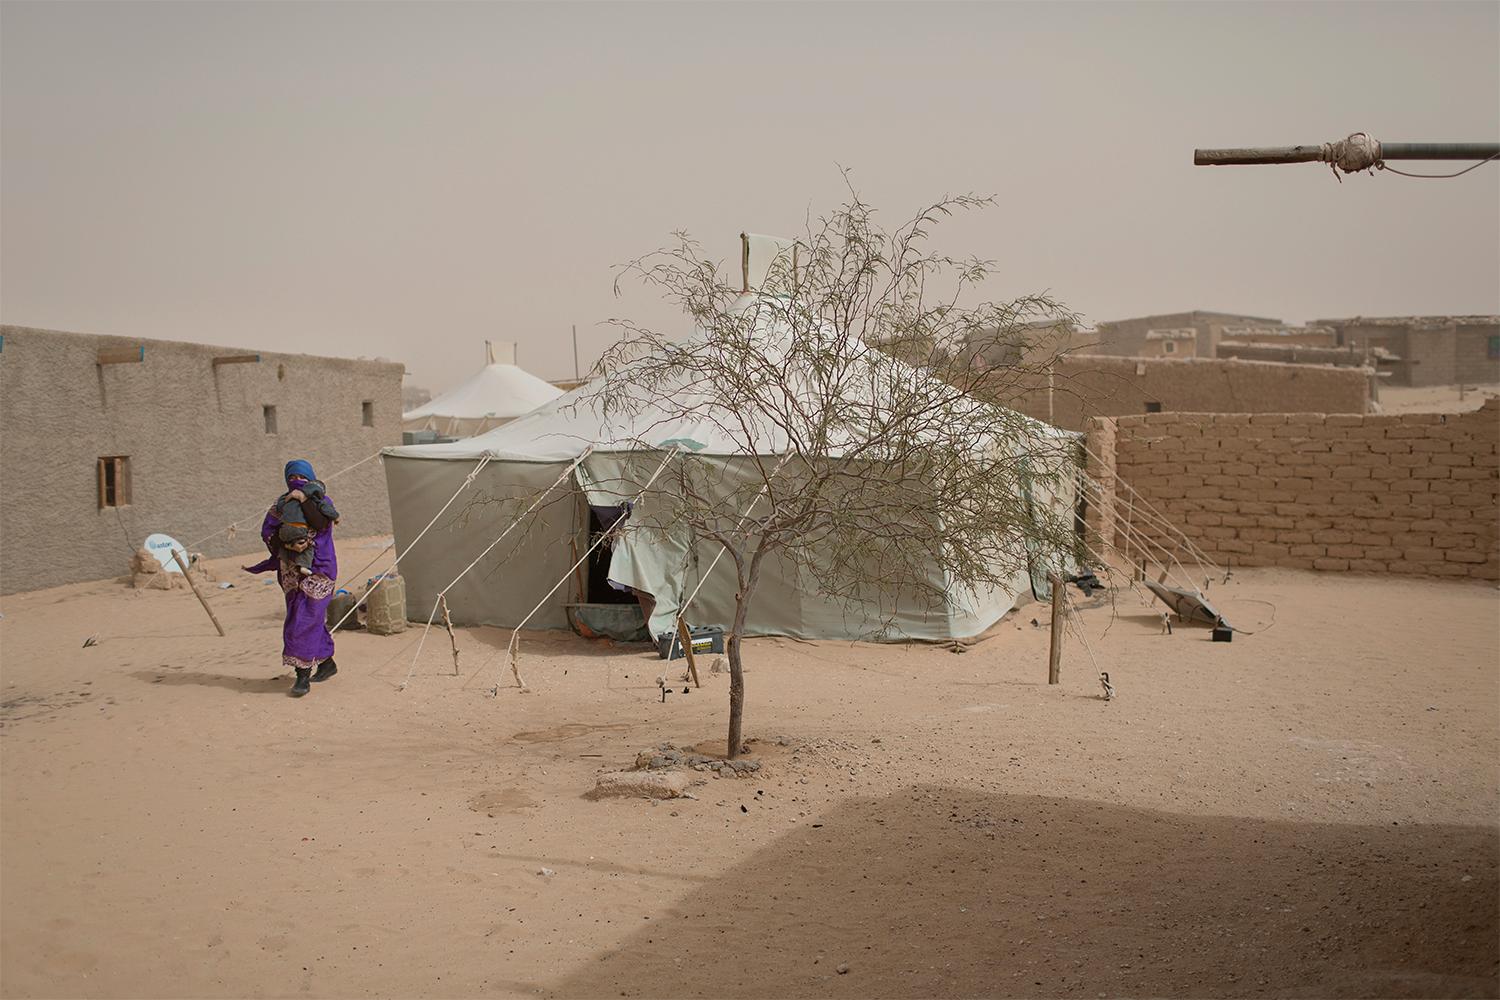 I flyktinglägret Smara utanför algeriska Tindouf bor tusentals flyktingar från Västsahara. Lägret är lugnt och fredligt, men 40 år efter att de första flyktingarna kom är invånarna fortfarande extremt fattiga och helt beroende av internationellt matbistånd. Johan Persson